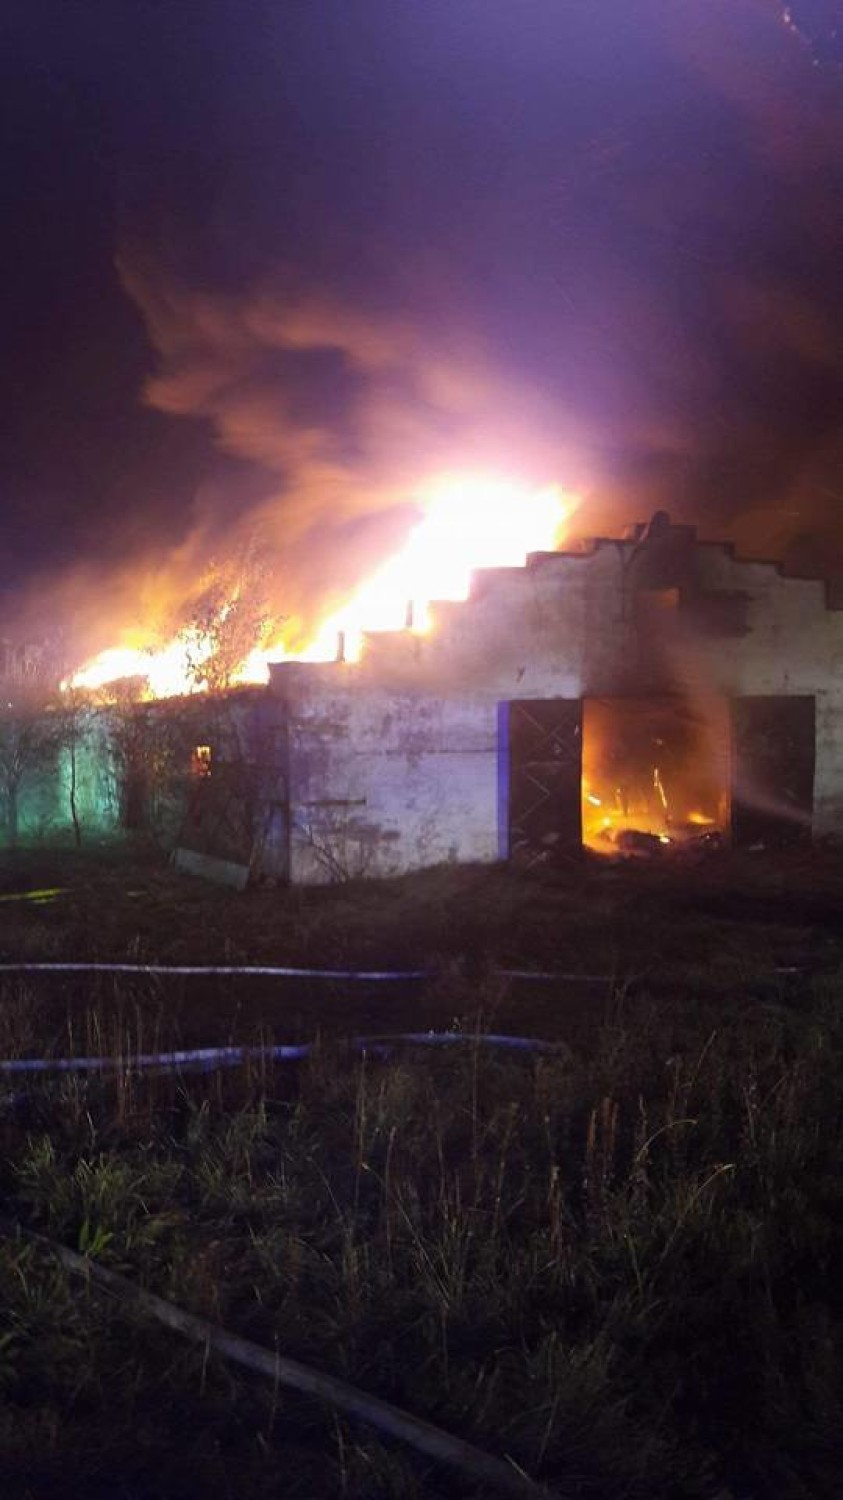 Wielki pożar w Mezowie, spłonął kurnik. Straty szacuje się na 100 tys. złotych  FOTO